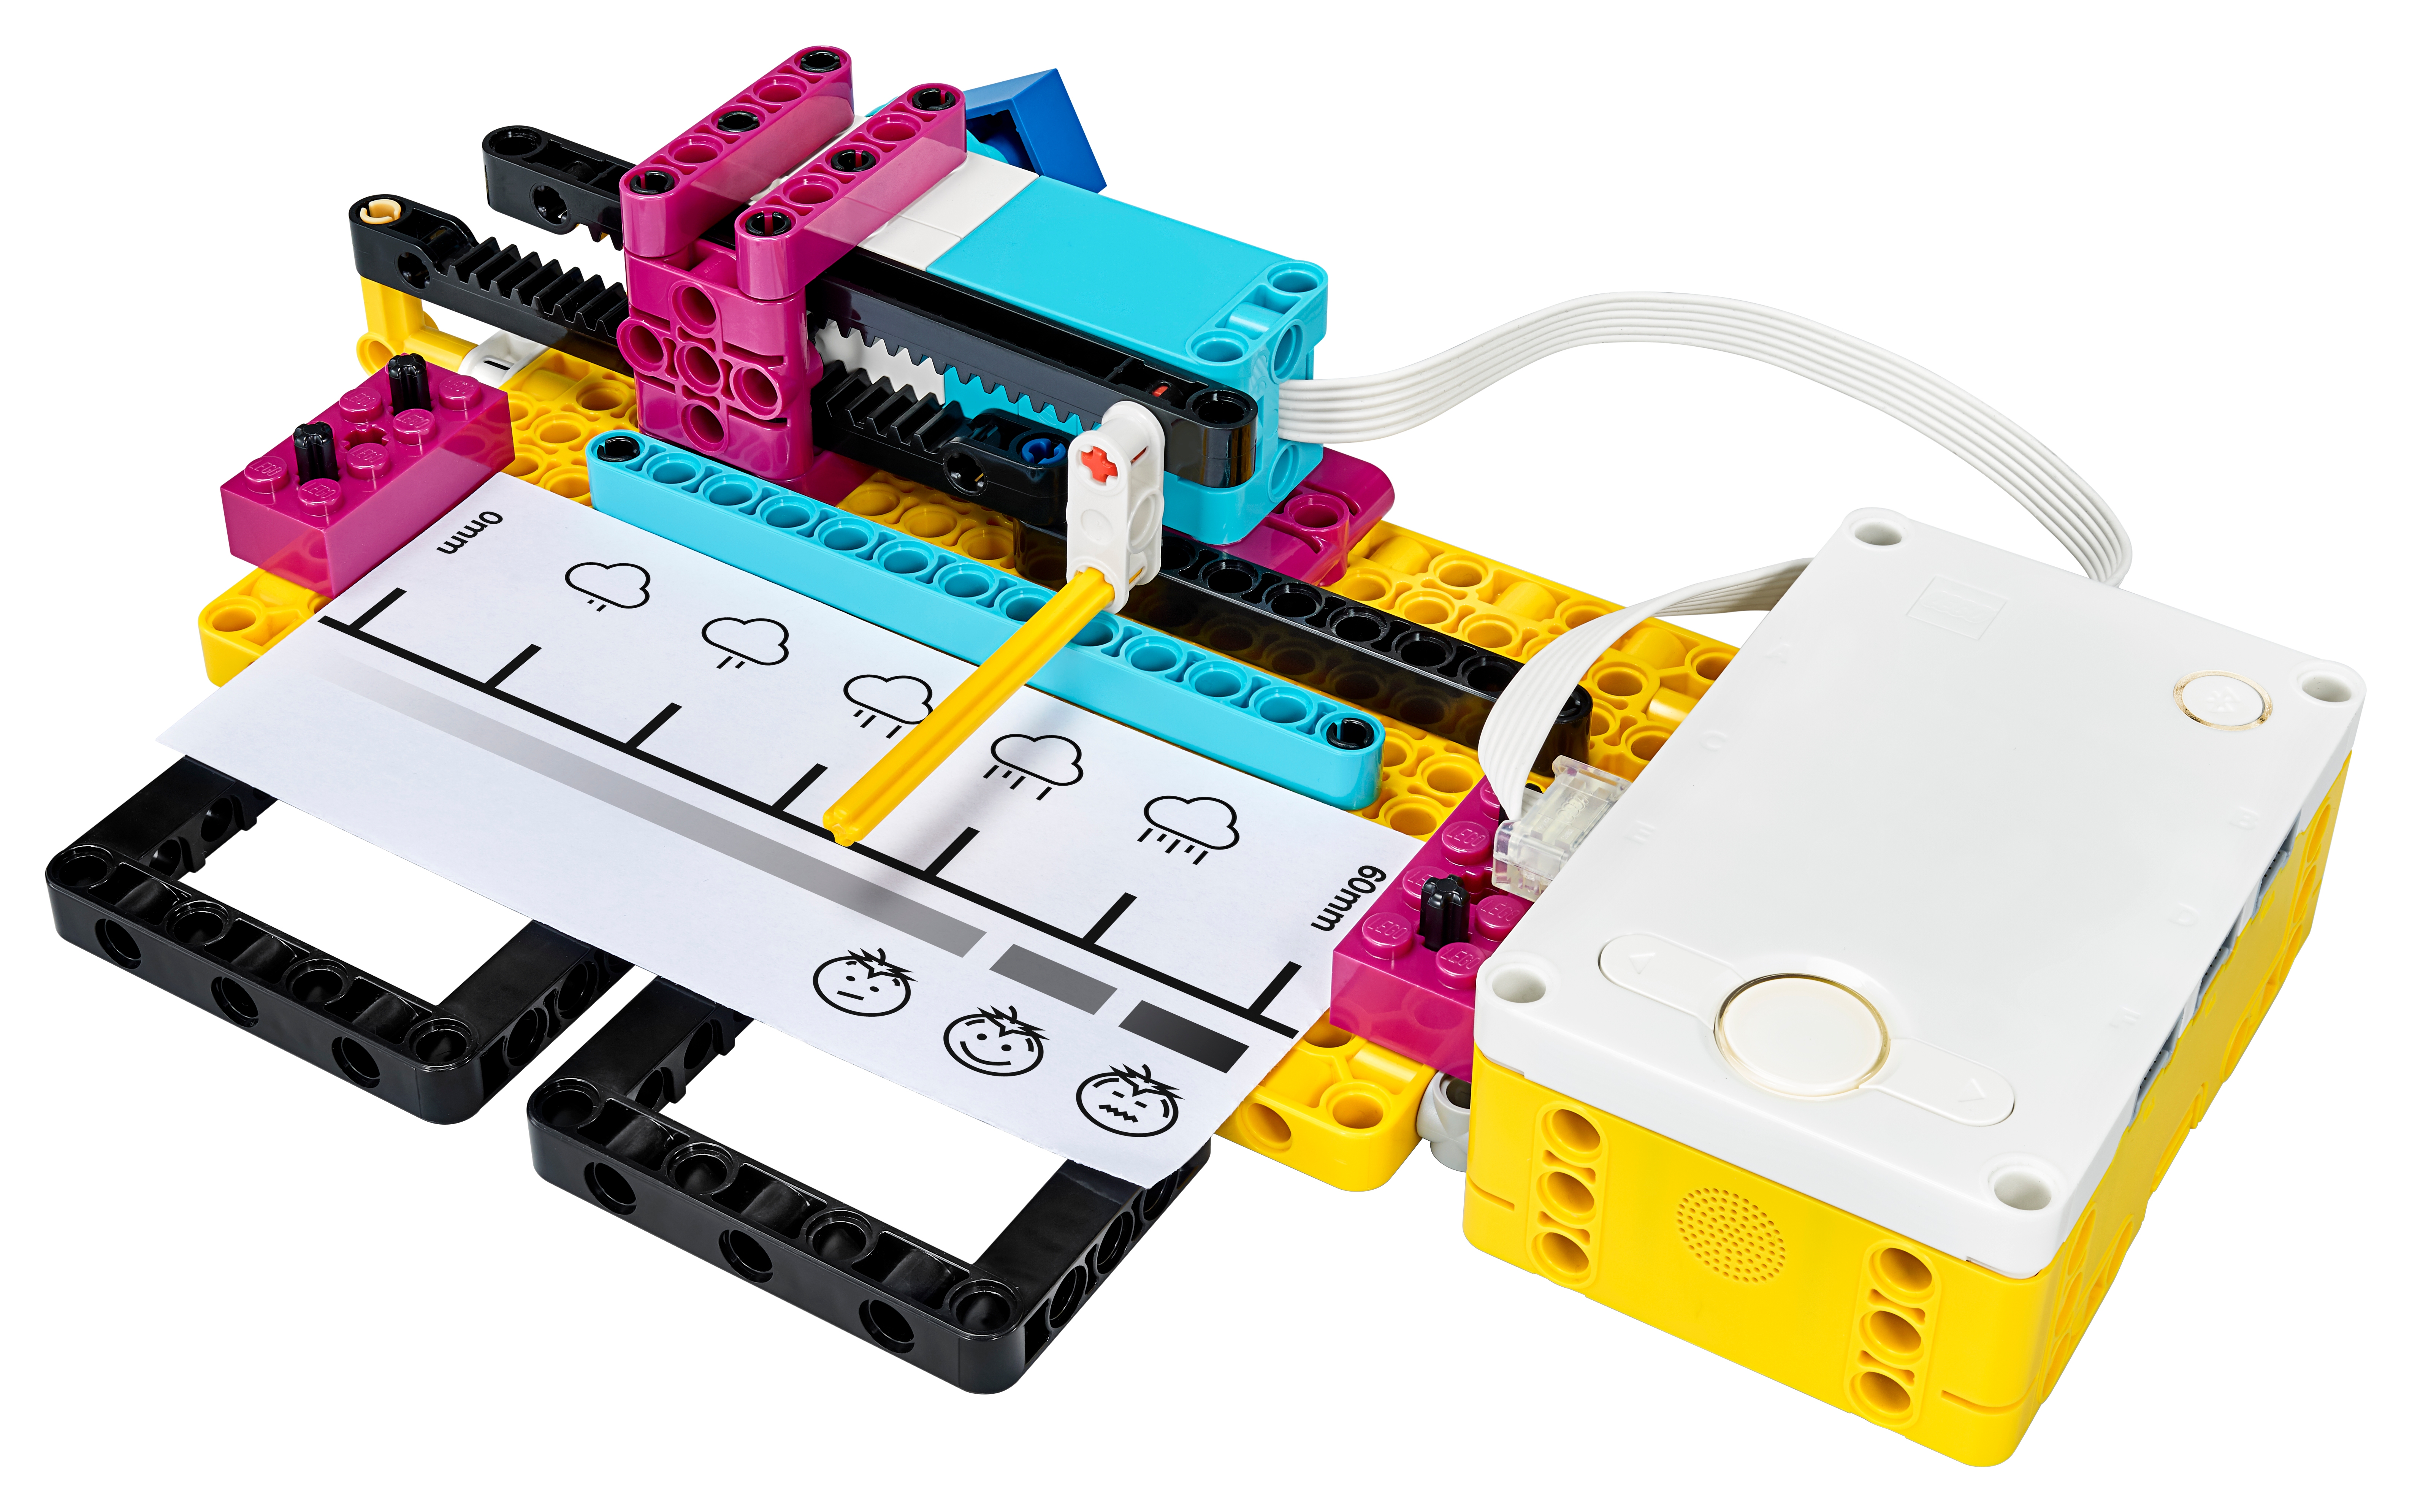 45678 Spike Prime Set nuevo envío gratuito a todo el mundo Lego Educación